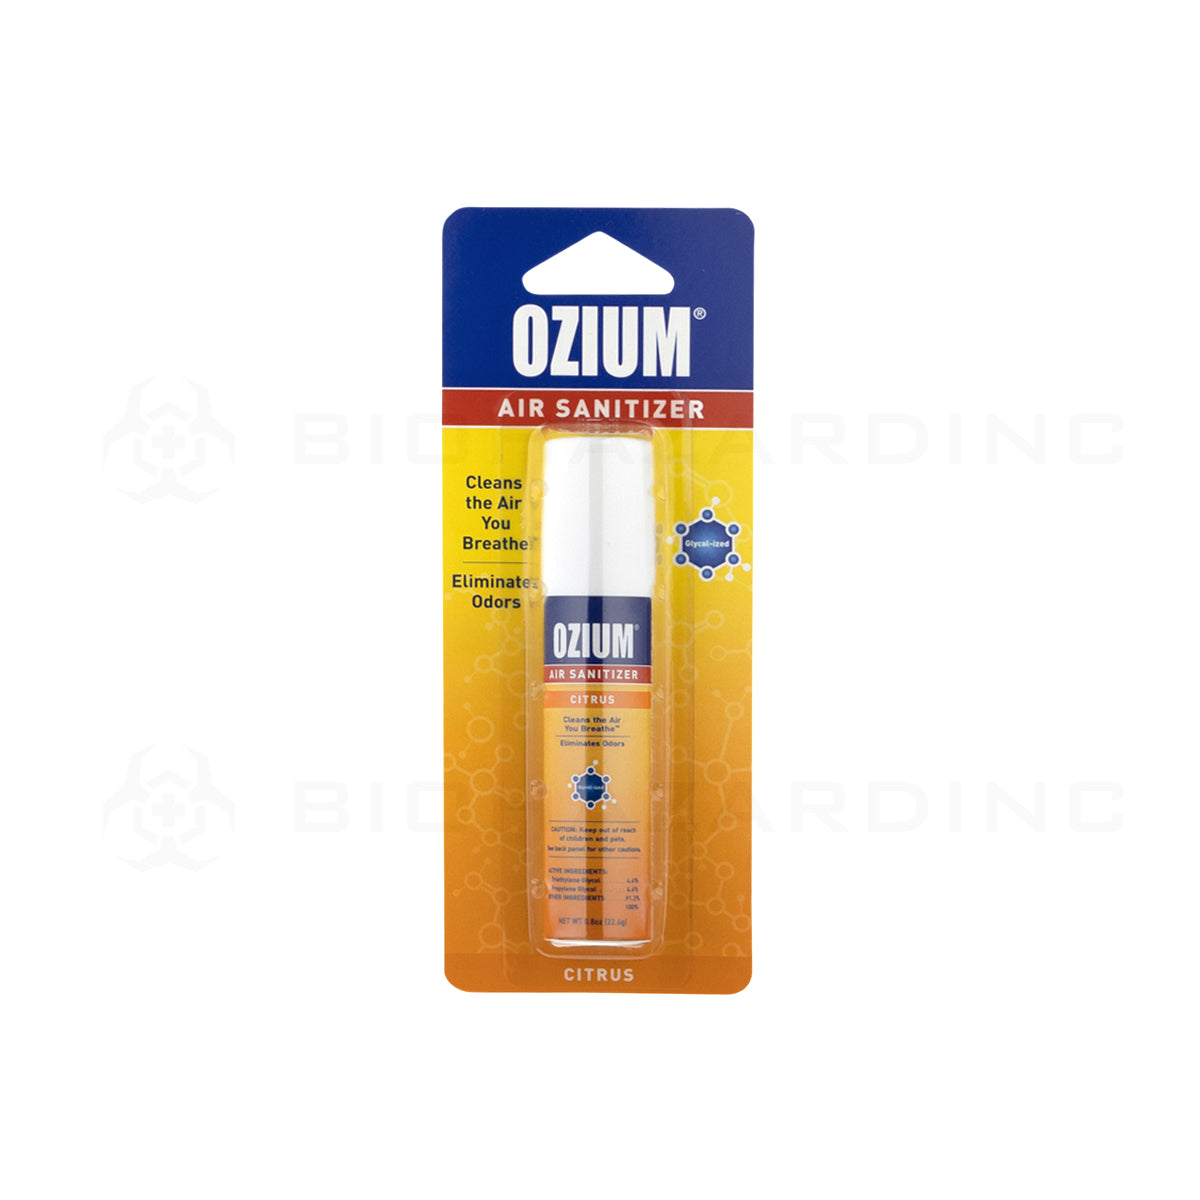 OZIUM® | Citrus Scent Air Sanitizer - 0.8oz Air Freshener Biohazard Inc   